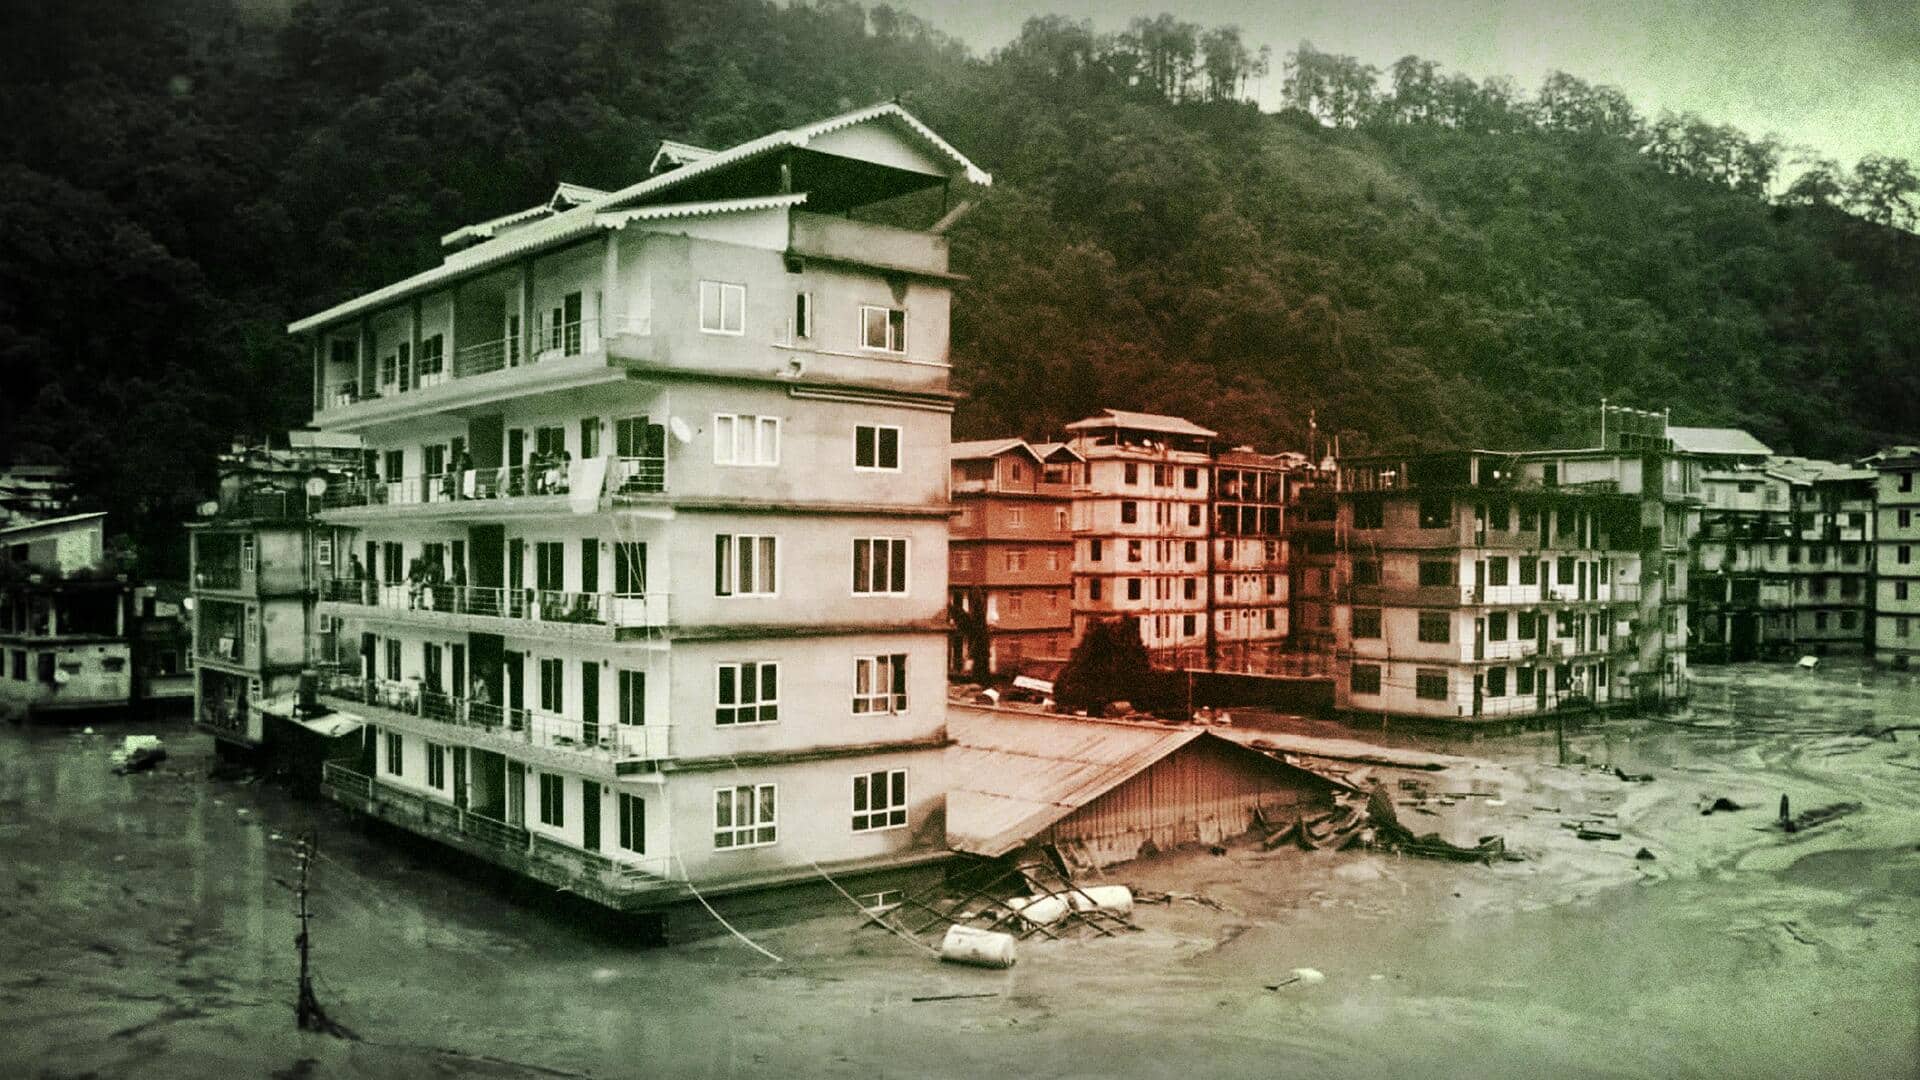 सिक्किम बाढ़: 14 लोगों की मौत, 22 जवानों समेत 102 लापता; हजारों पर्यटक फंसे